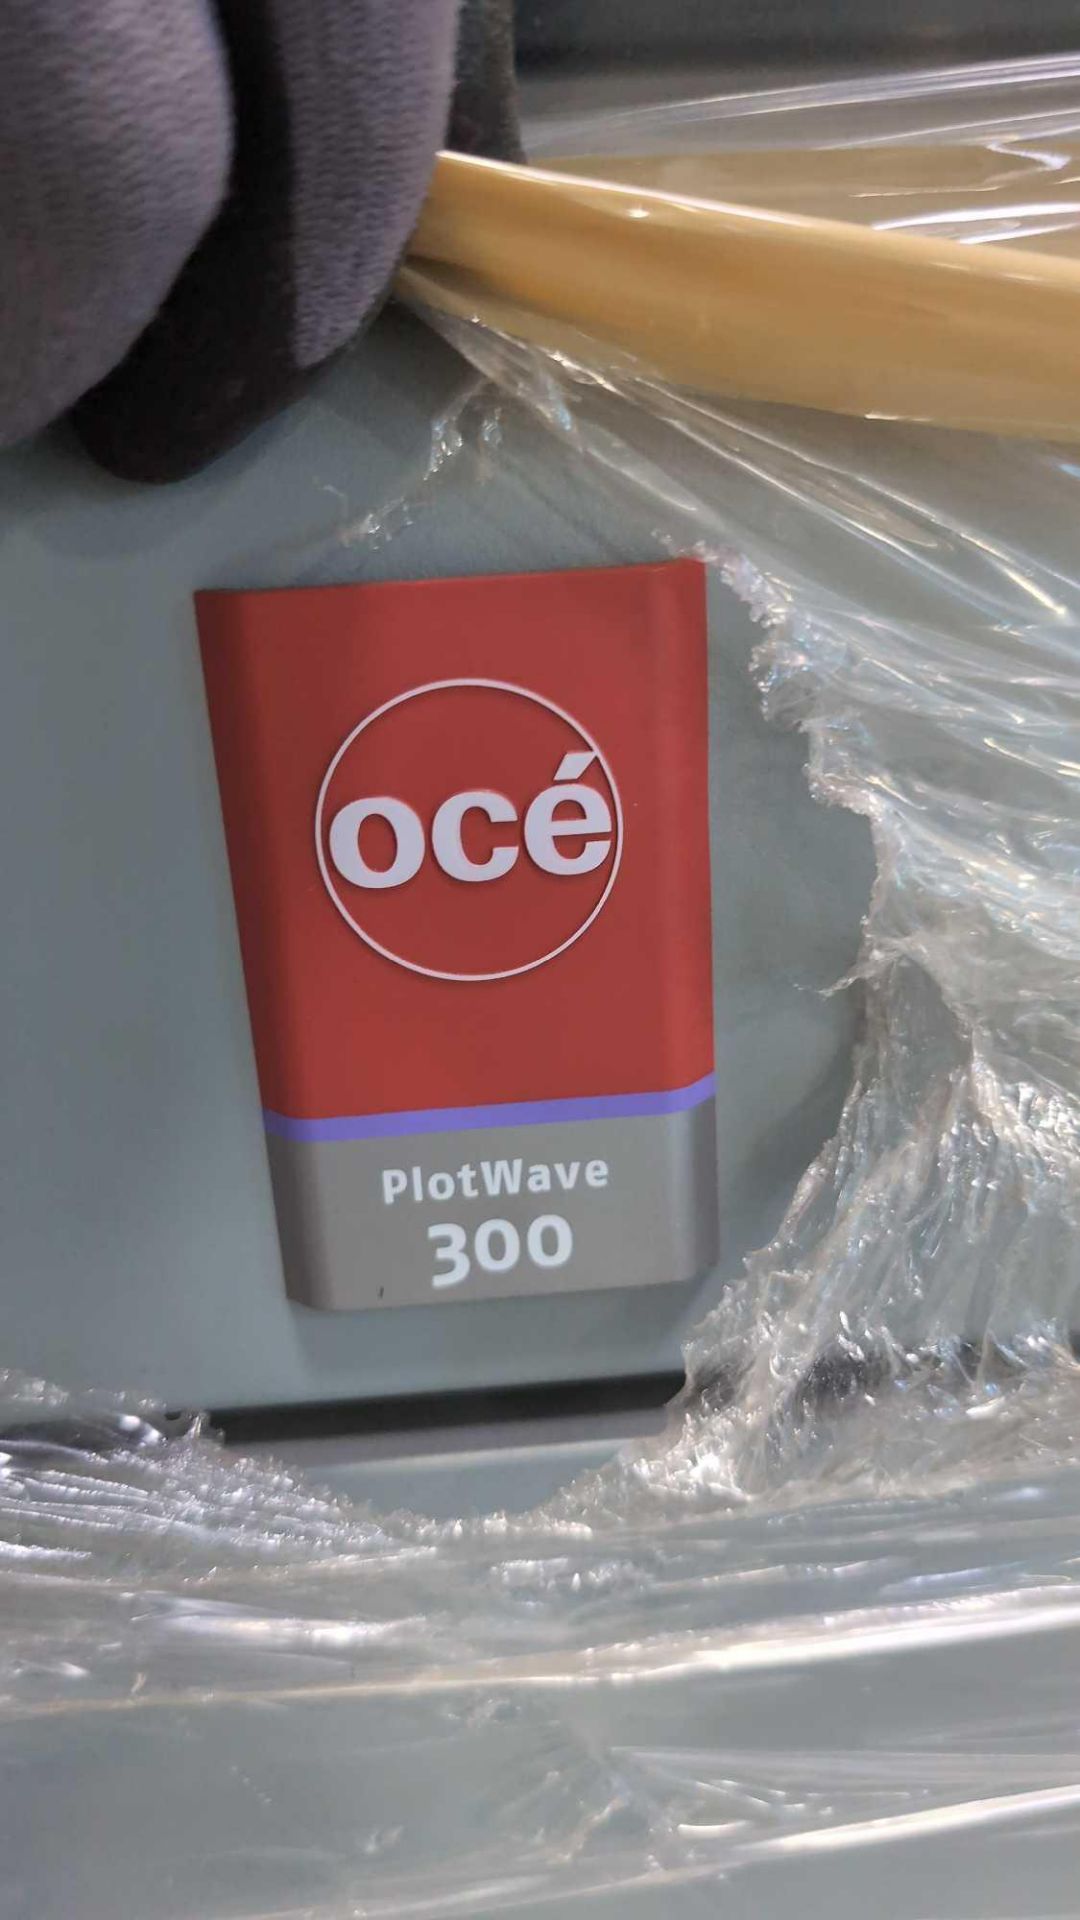 OCE Plotwave 300 Printer - Image 5 of 10